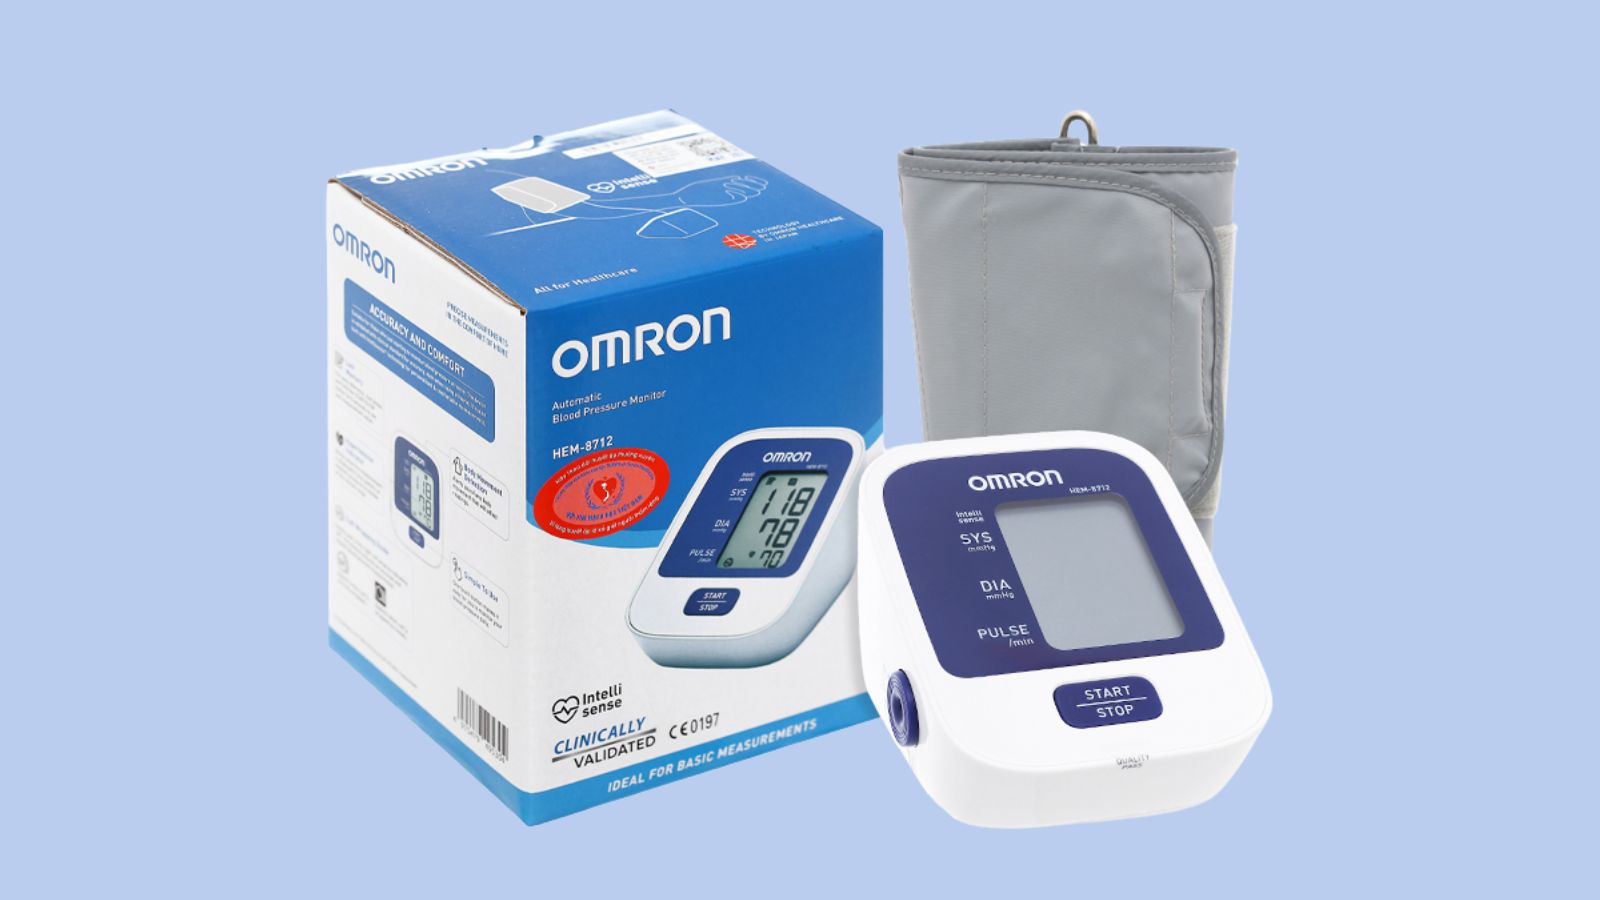 Máy đo Omron HEM-8712 giúp kiểm tra huyết áp, nhịp tim cơ thể mỗi ngày